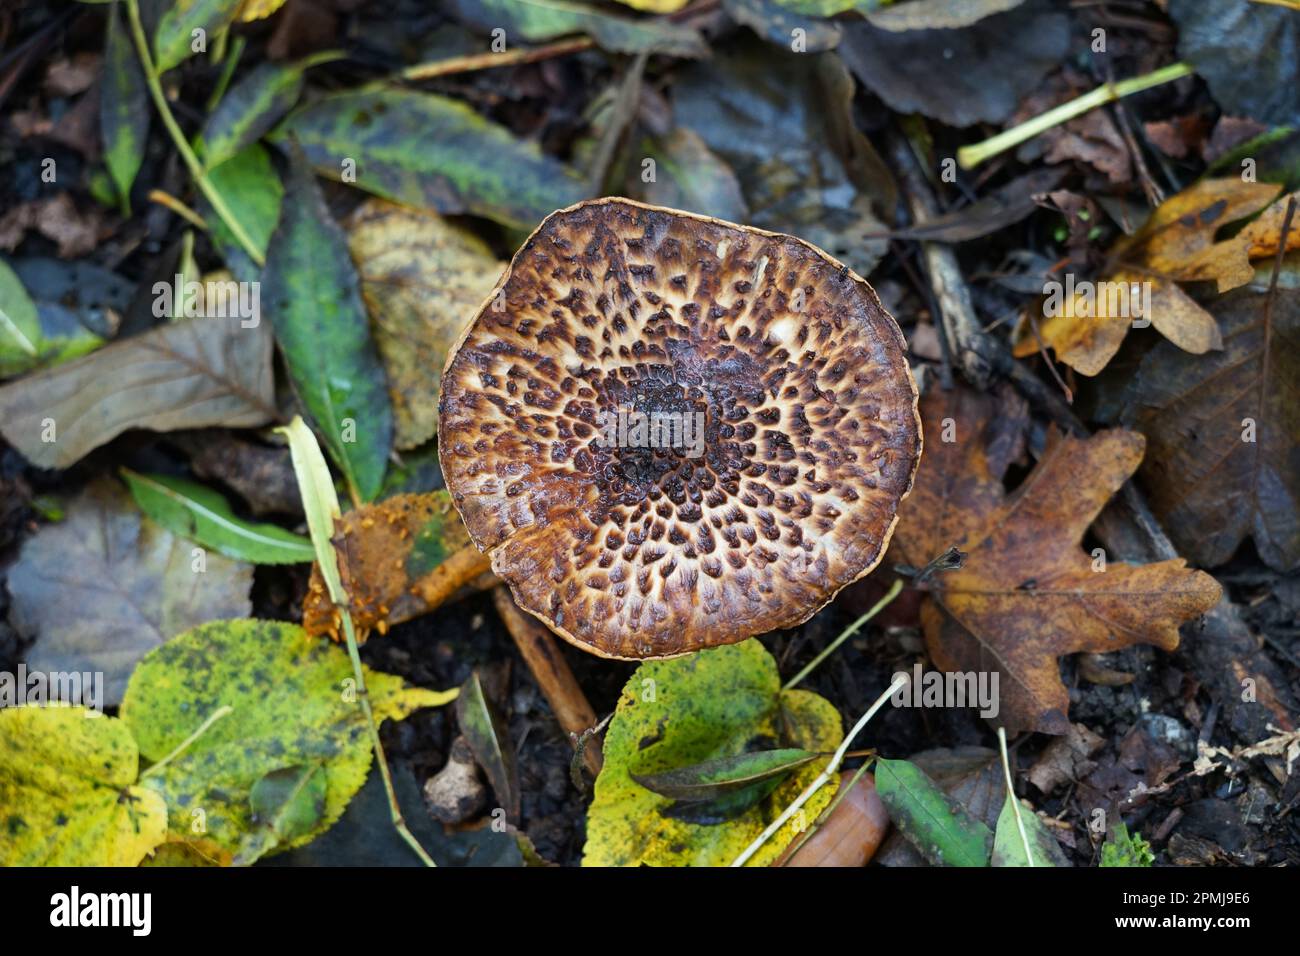 Champignons forêt de champignons sur les feuilles de terre, Pilz Pilze, champignons schön Banque D'Images